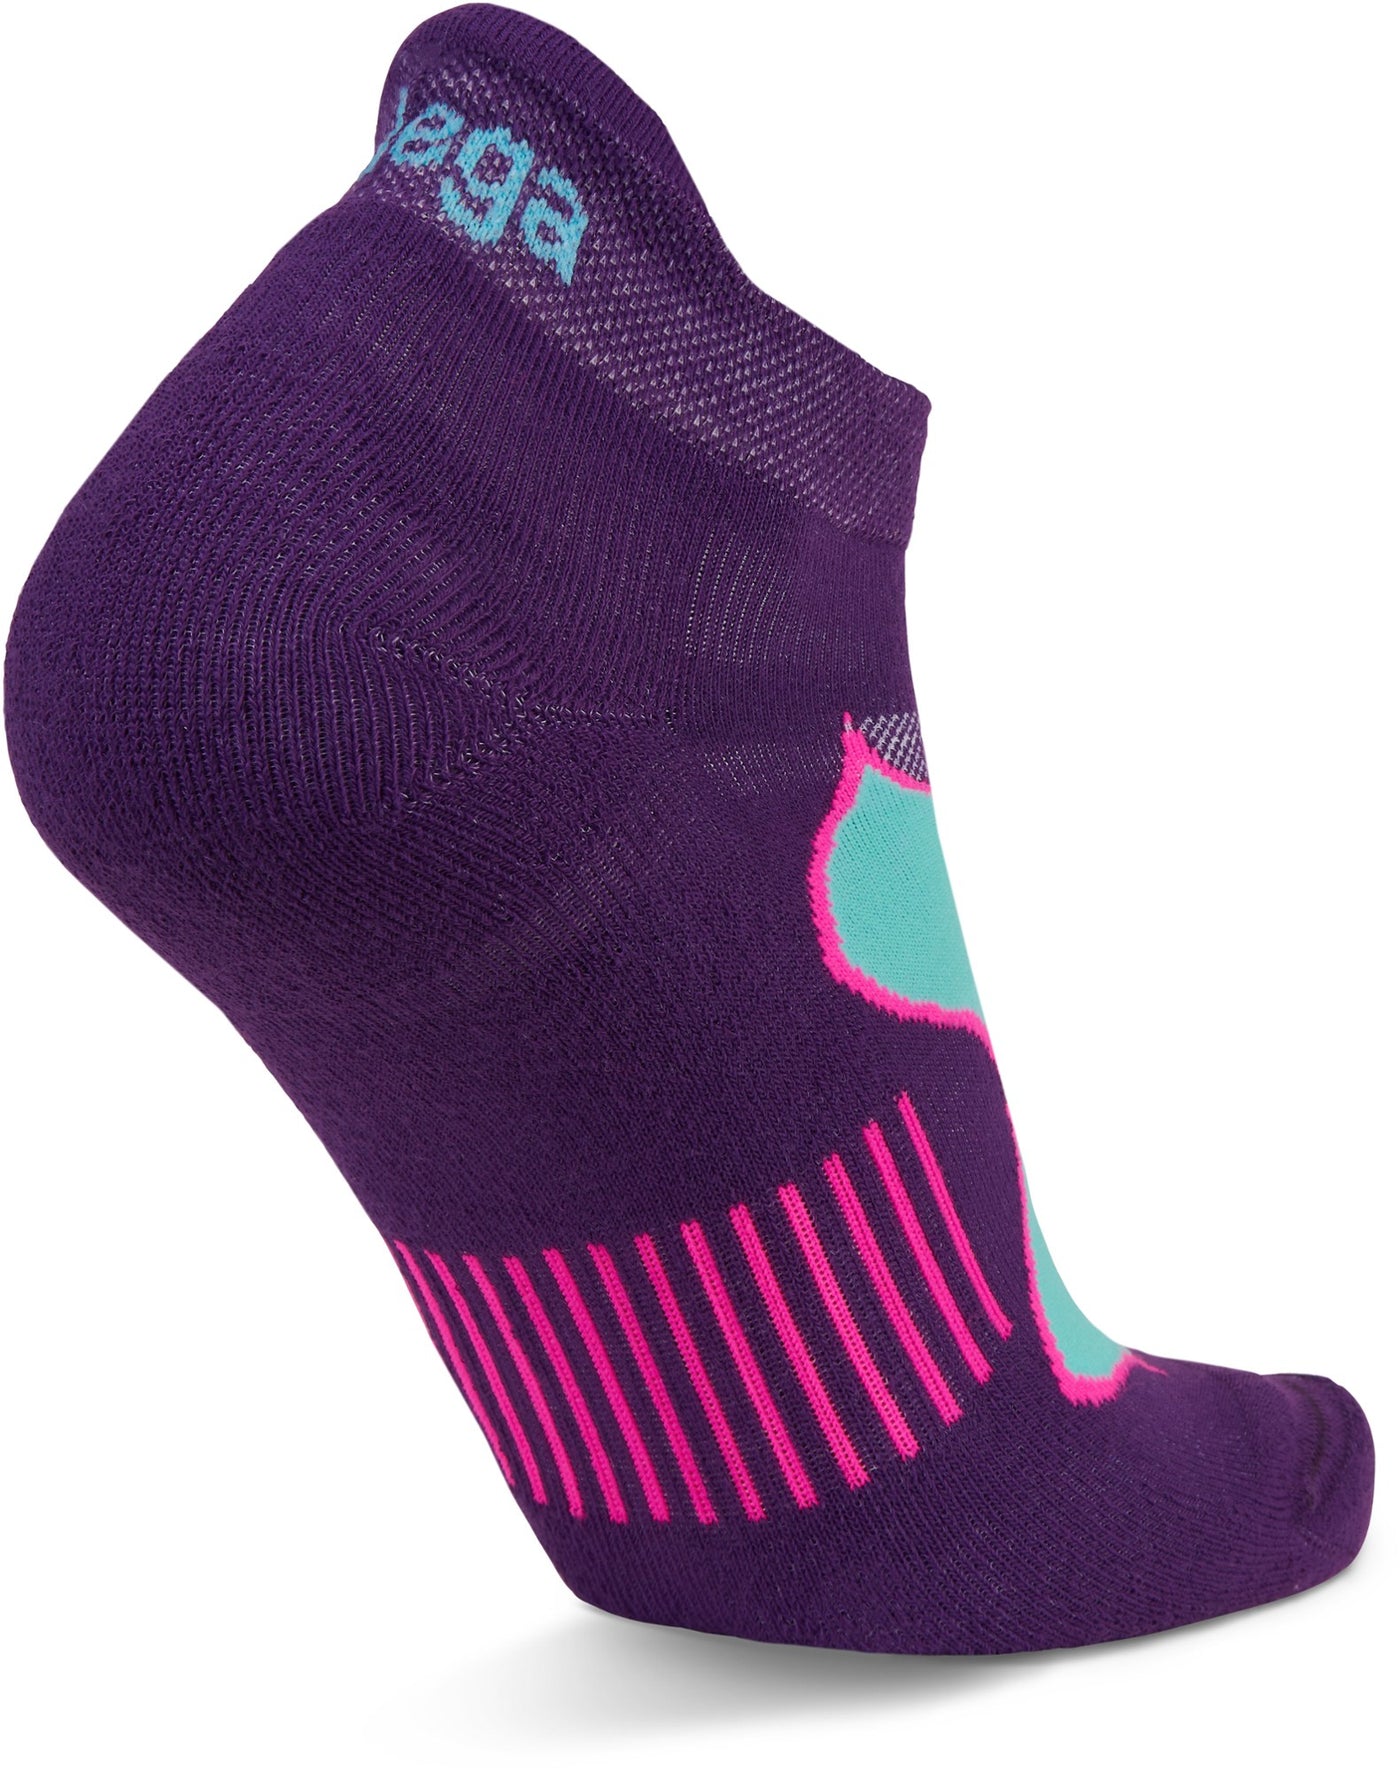 Women's Balega Enduro No Show Socks - 7501-0679